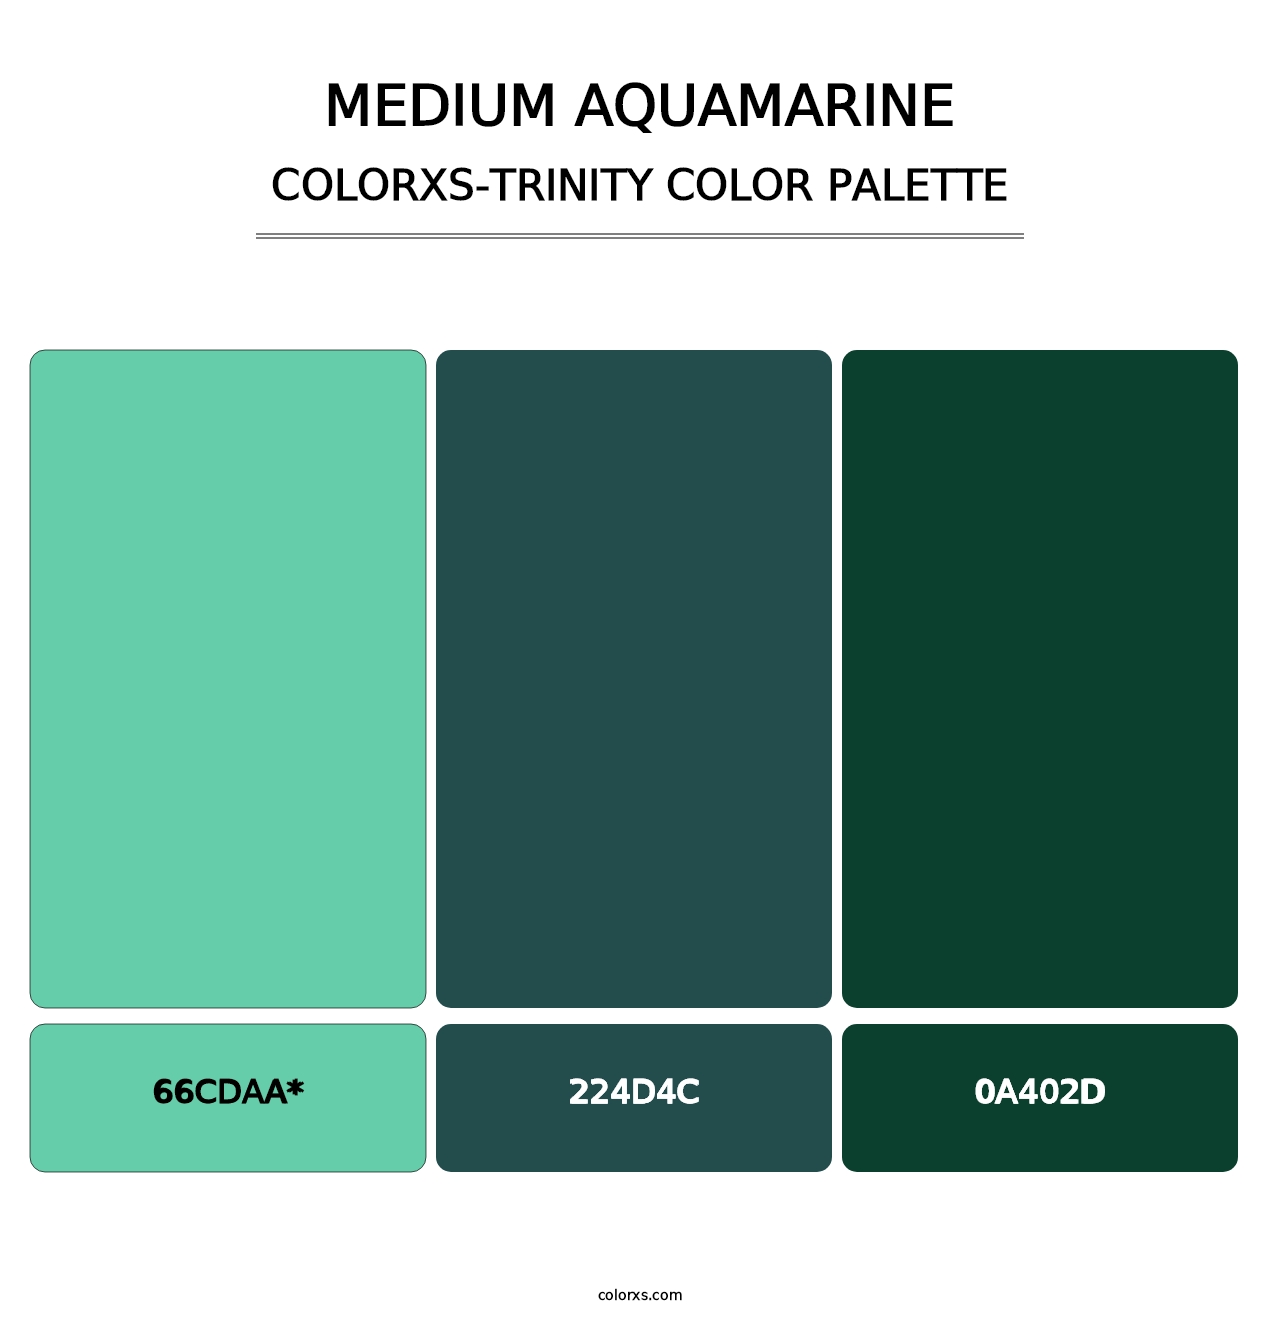 Medium Aquamarine - Colorxs Trinity Palette